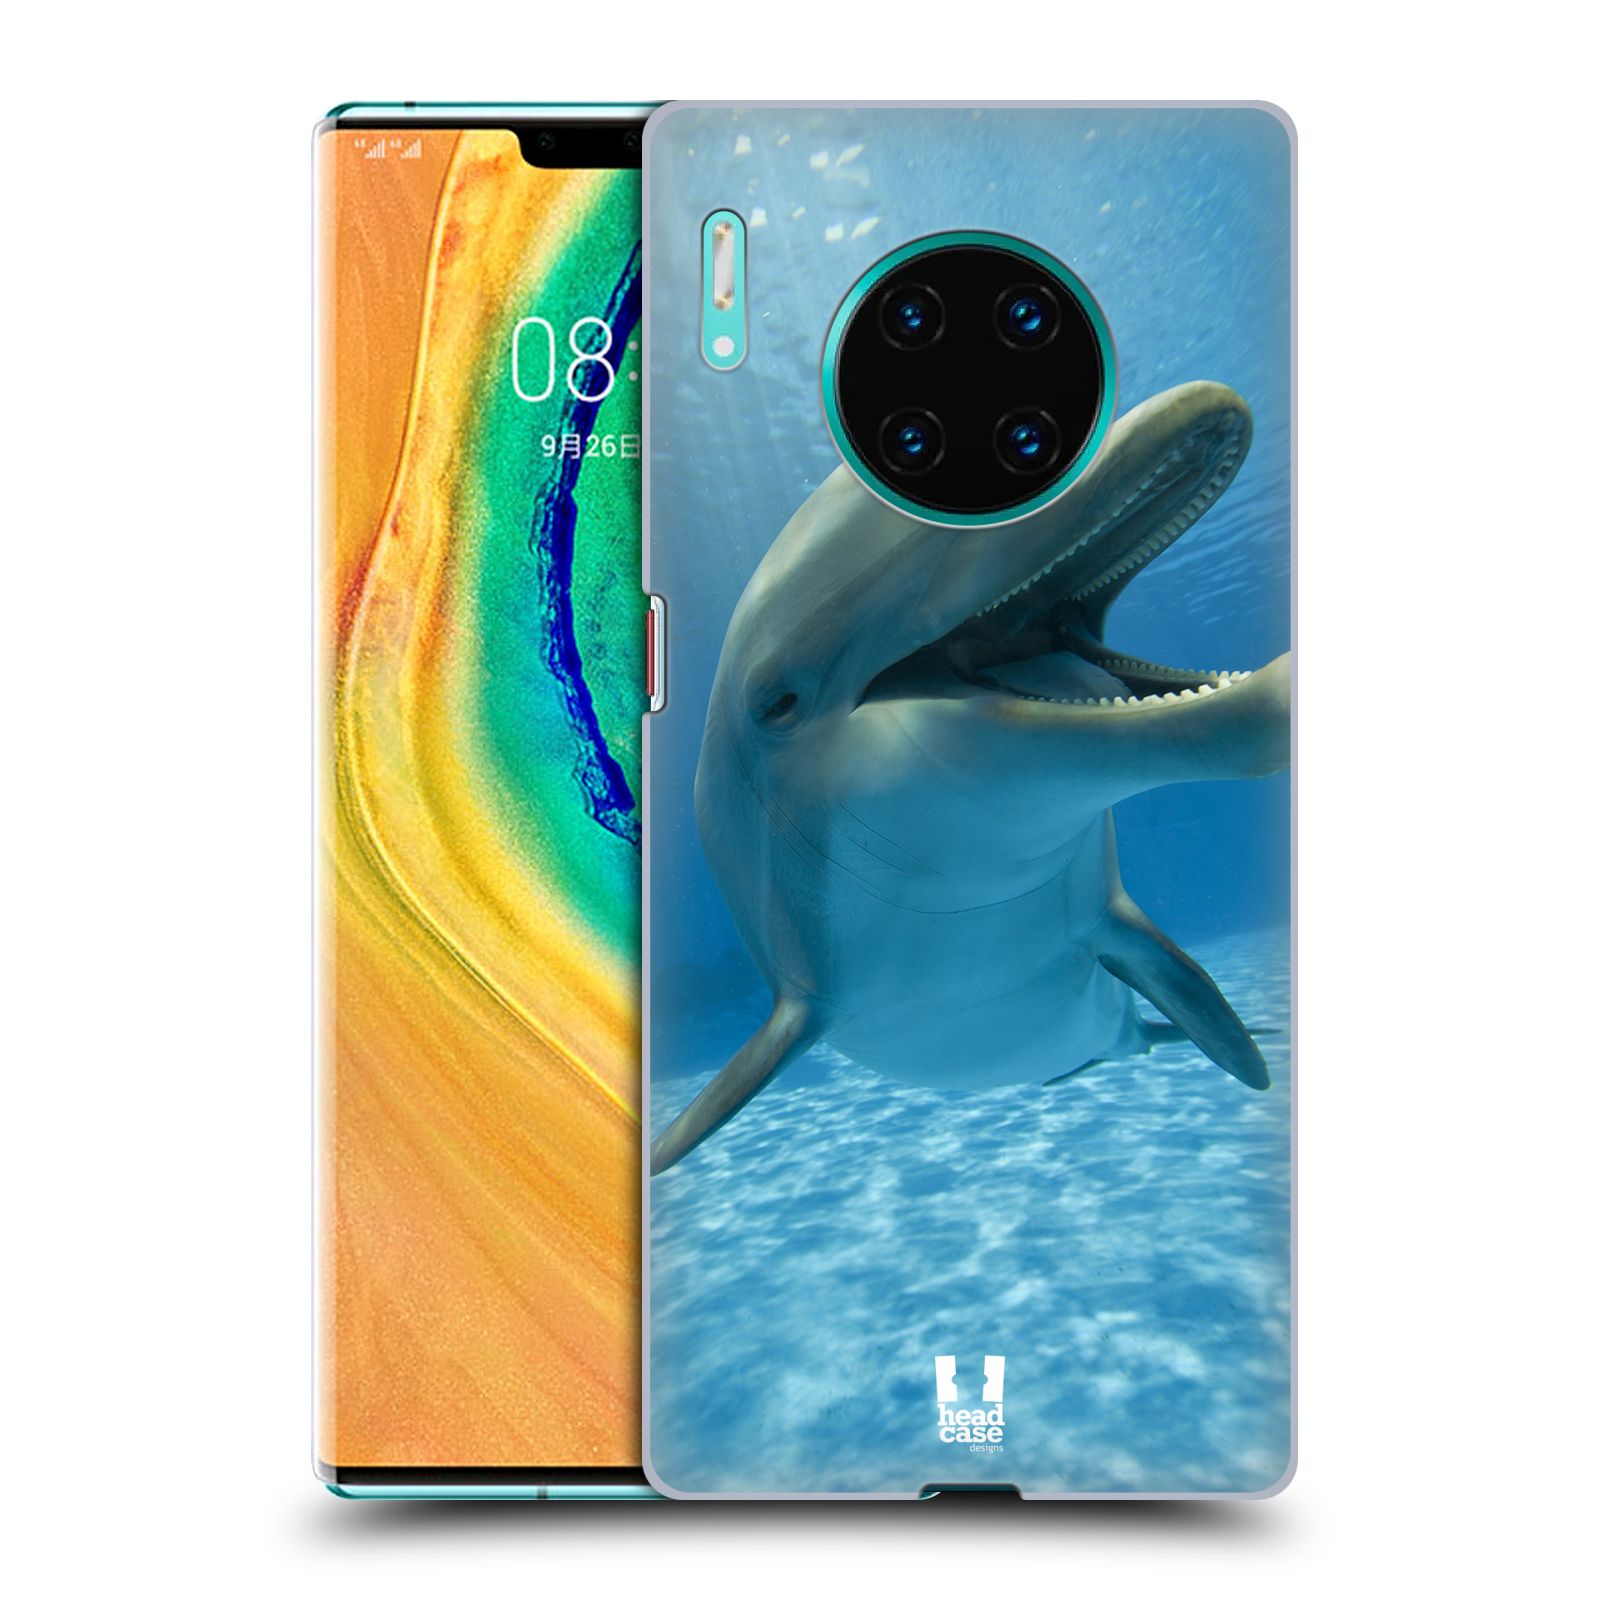 Zadní obal pro mobil Huawei Mate 30 PRO - HEAD CASE - Svět zvířat delfín v moři